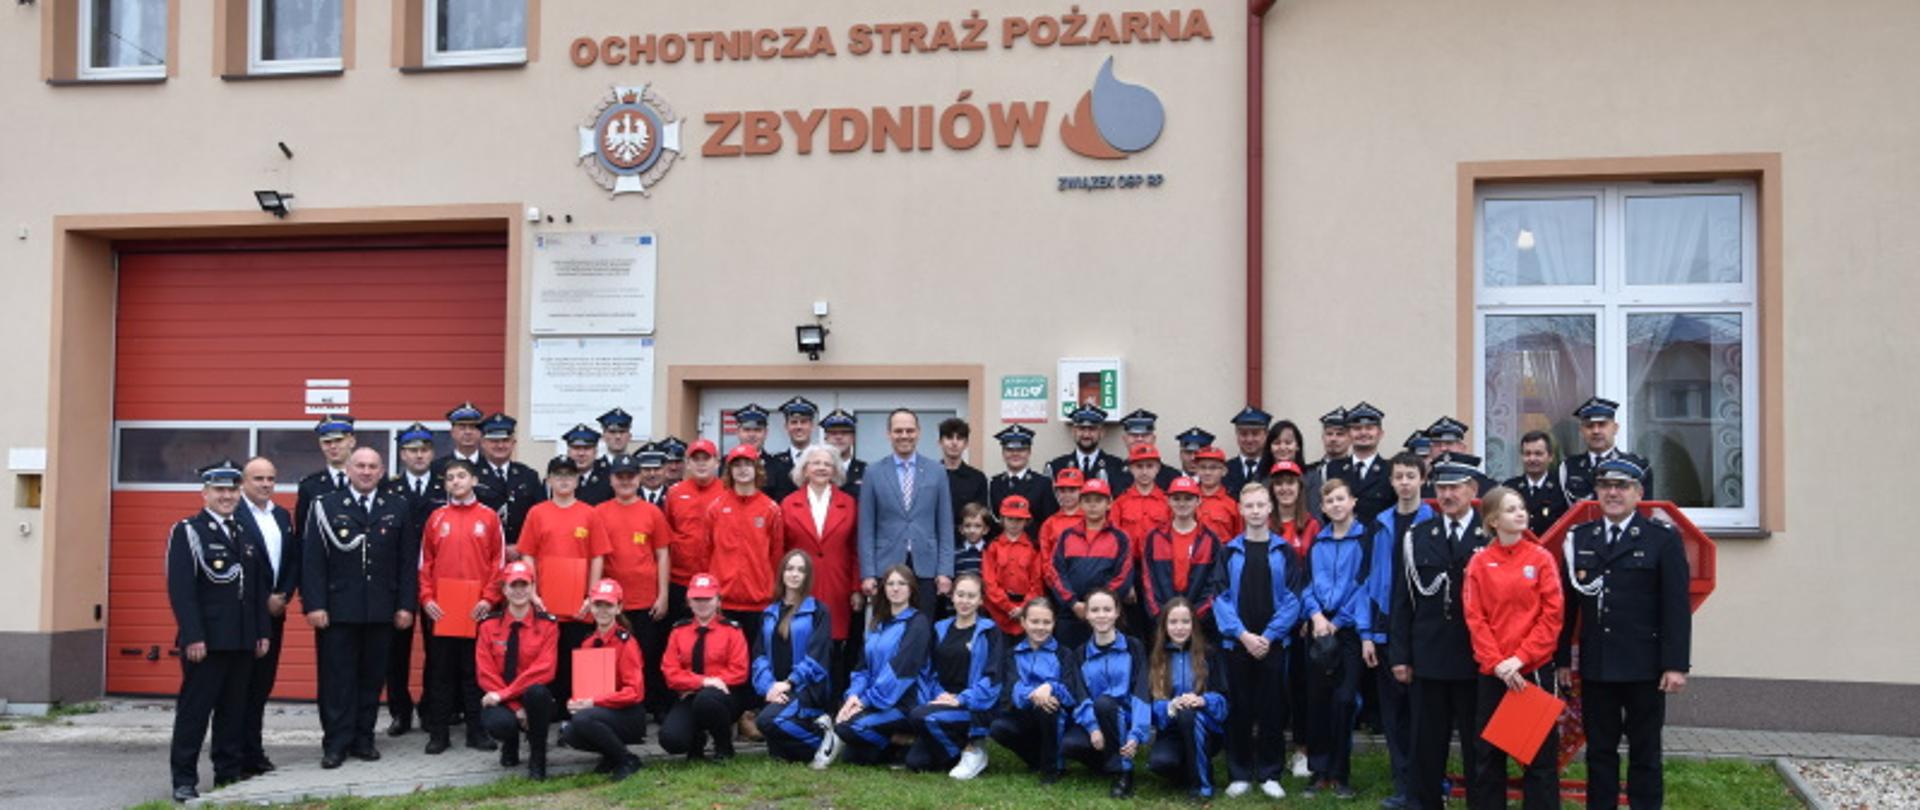 MDP powiatu stalowowolskiego wraz z przedstawicielami jednostek OSP na zbiórce z okazji wręczenia promes